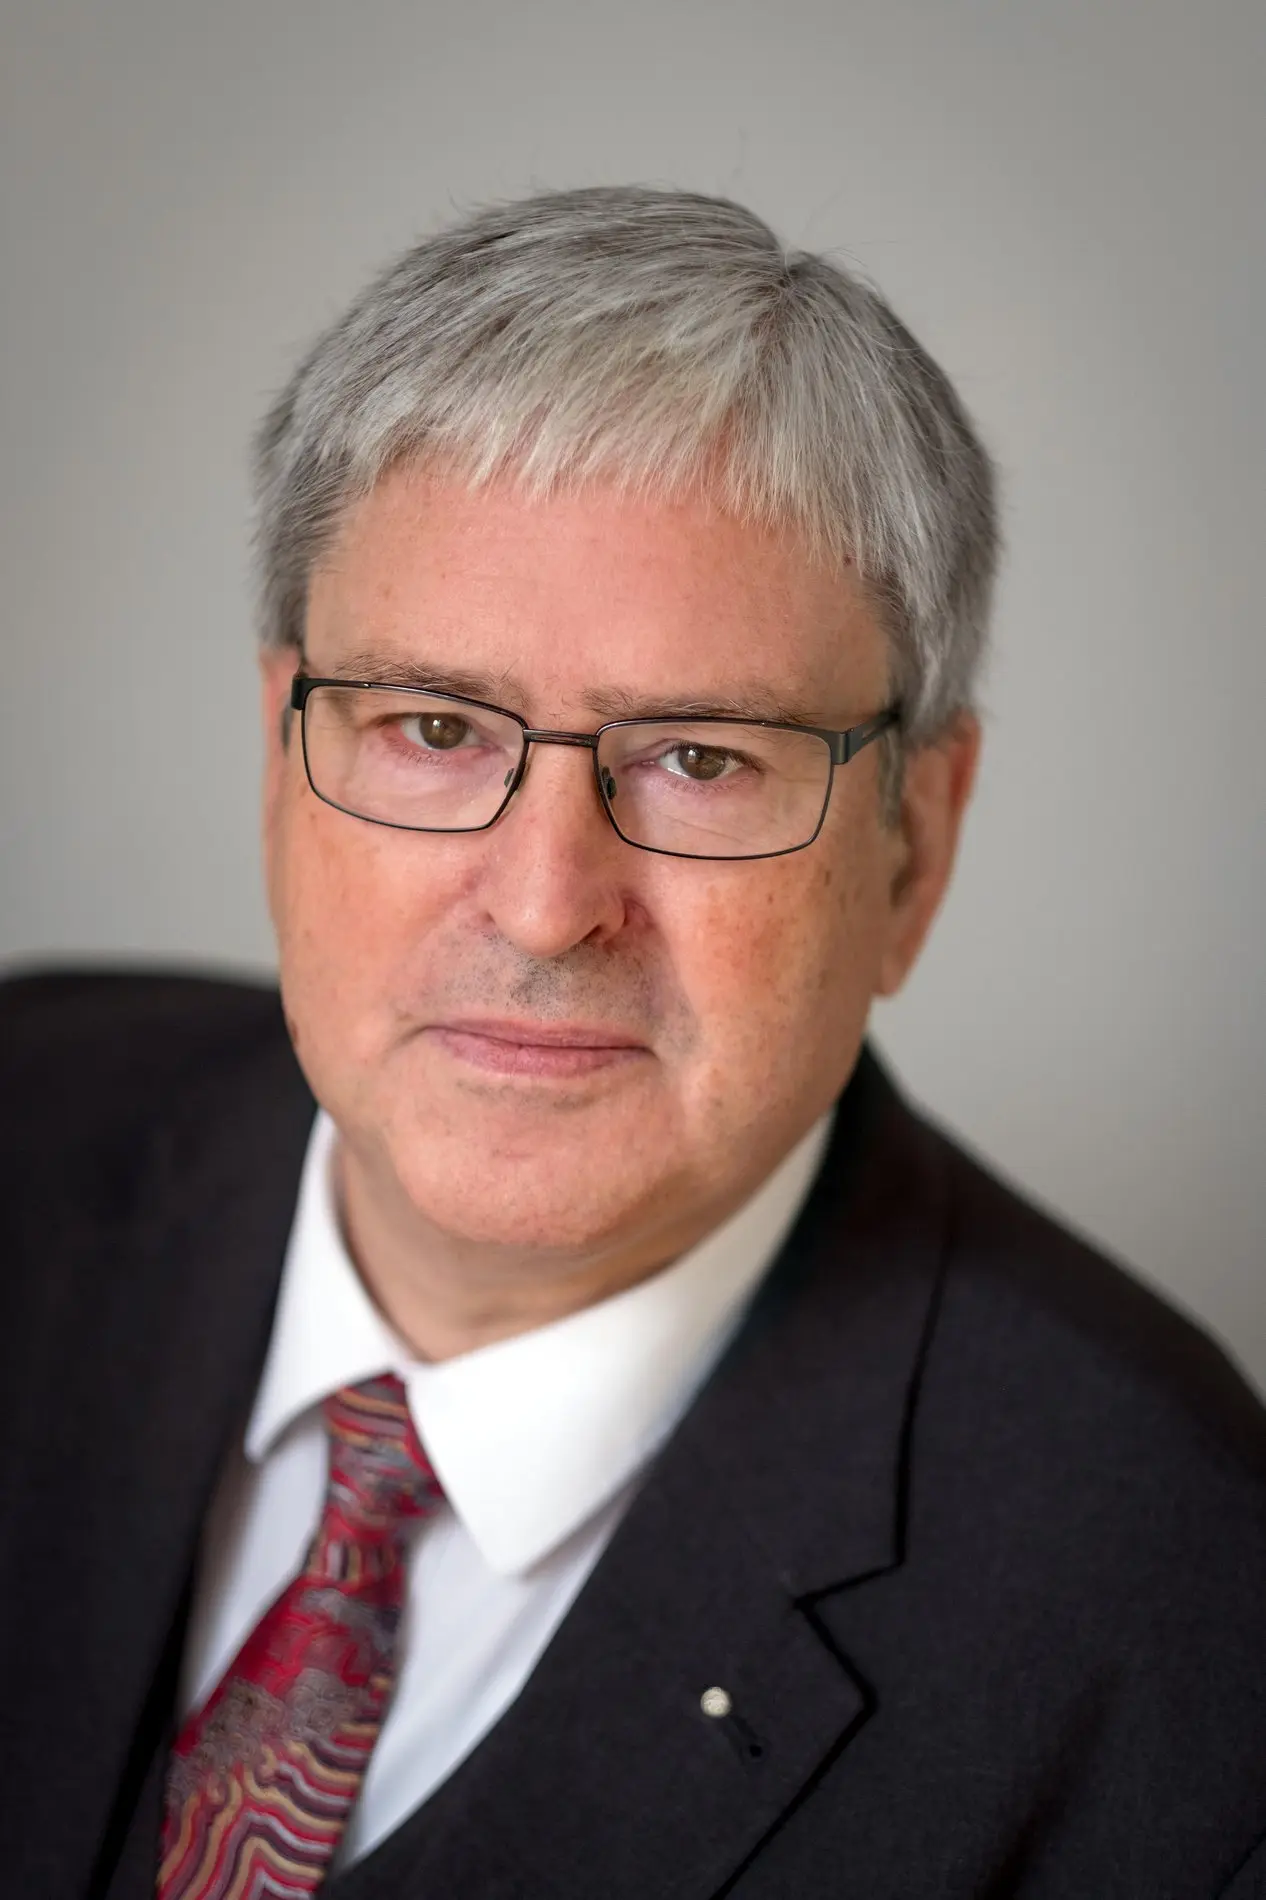 Porträt von Jörg Steinbach im Anzug mit Krawatte und einer Brille